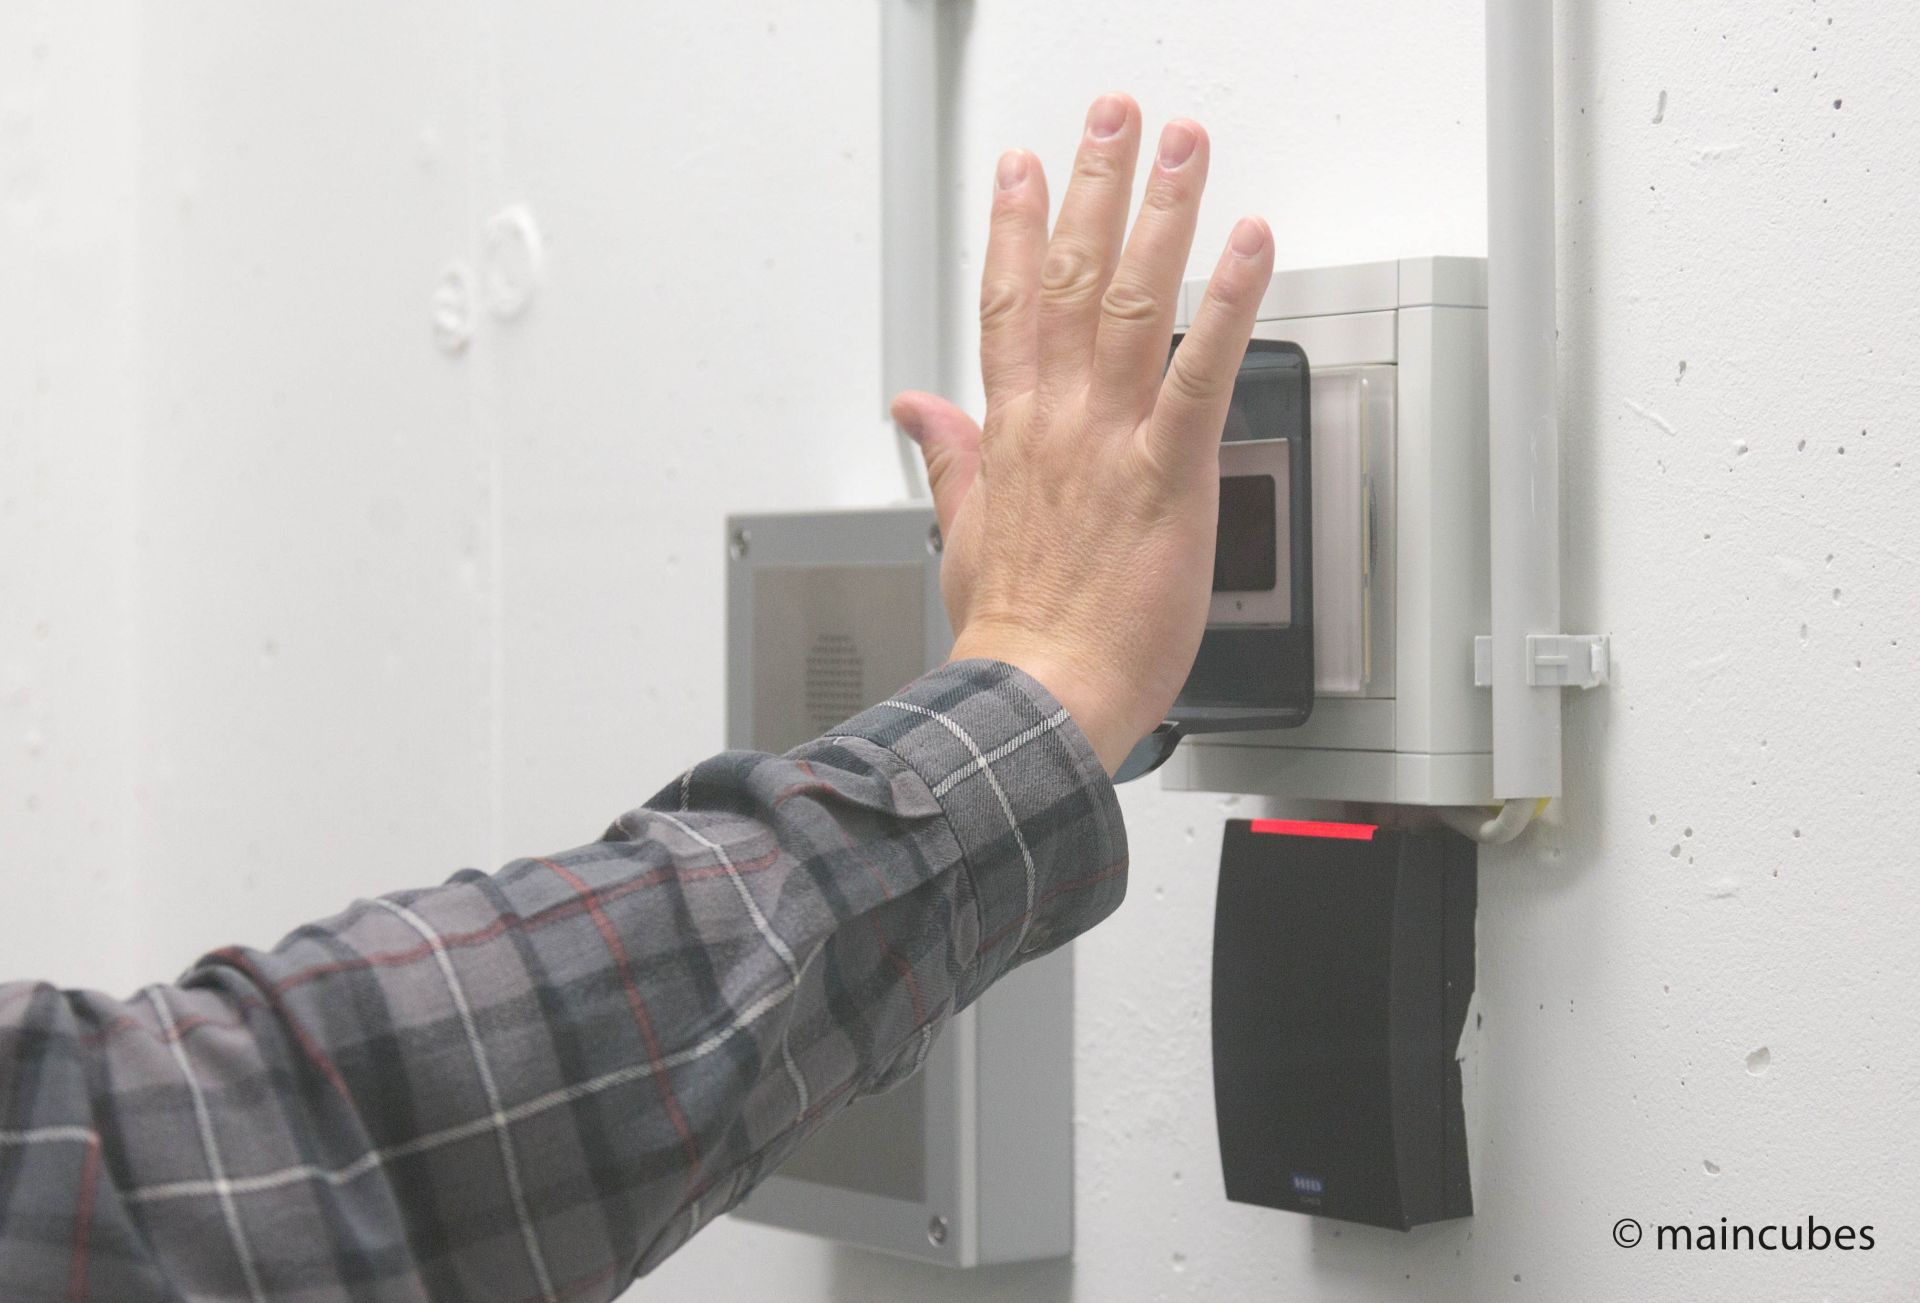 Hochmoderner Venenscanner an einer Wand montiert, davor eine Hand, welche die Handfläche offen zum Sensor zeigt.